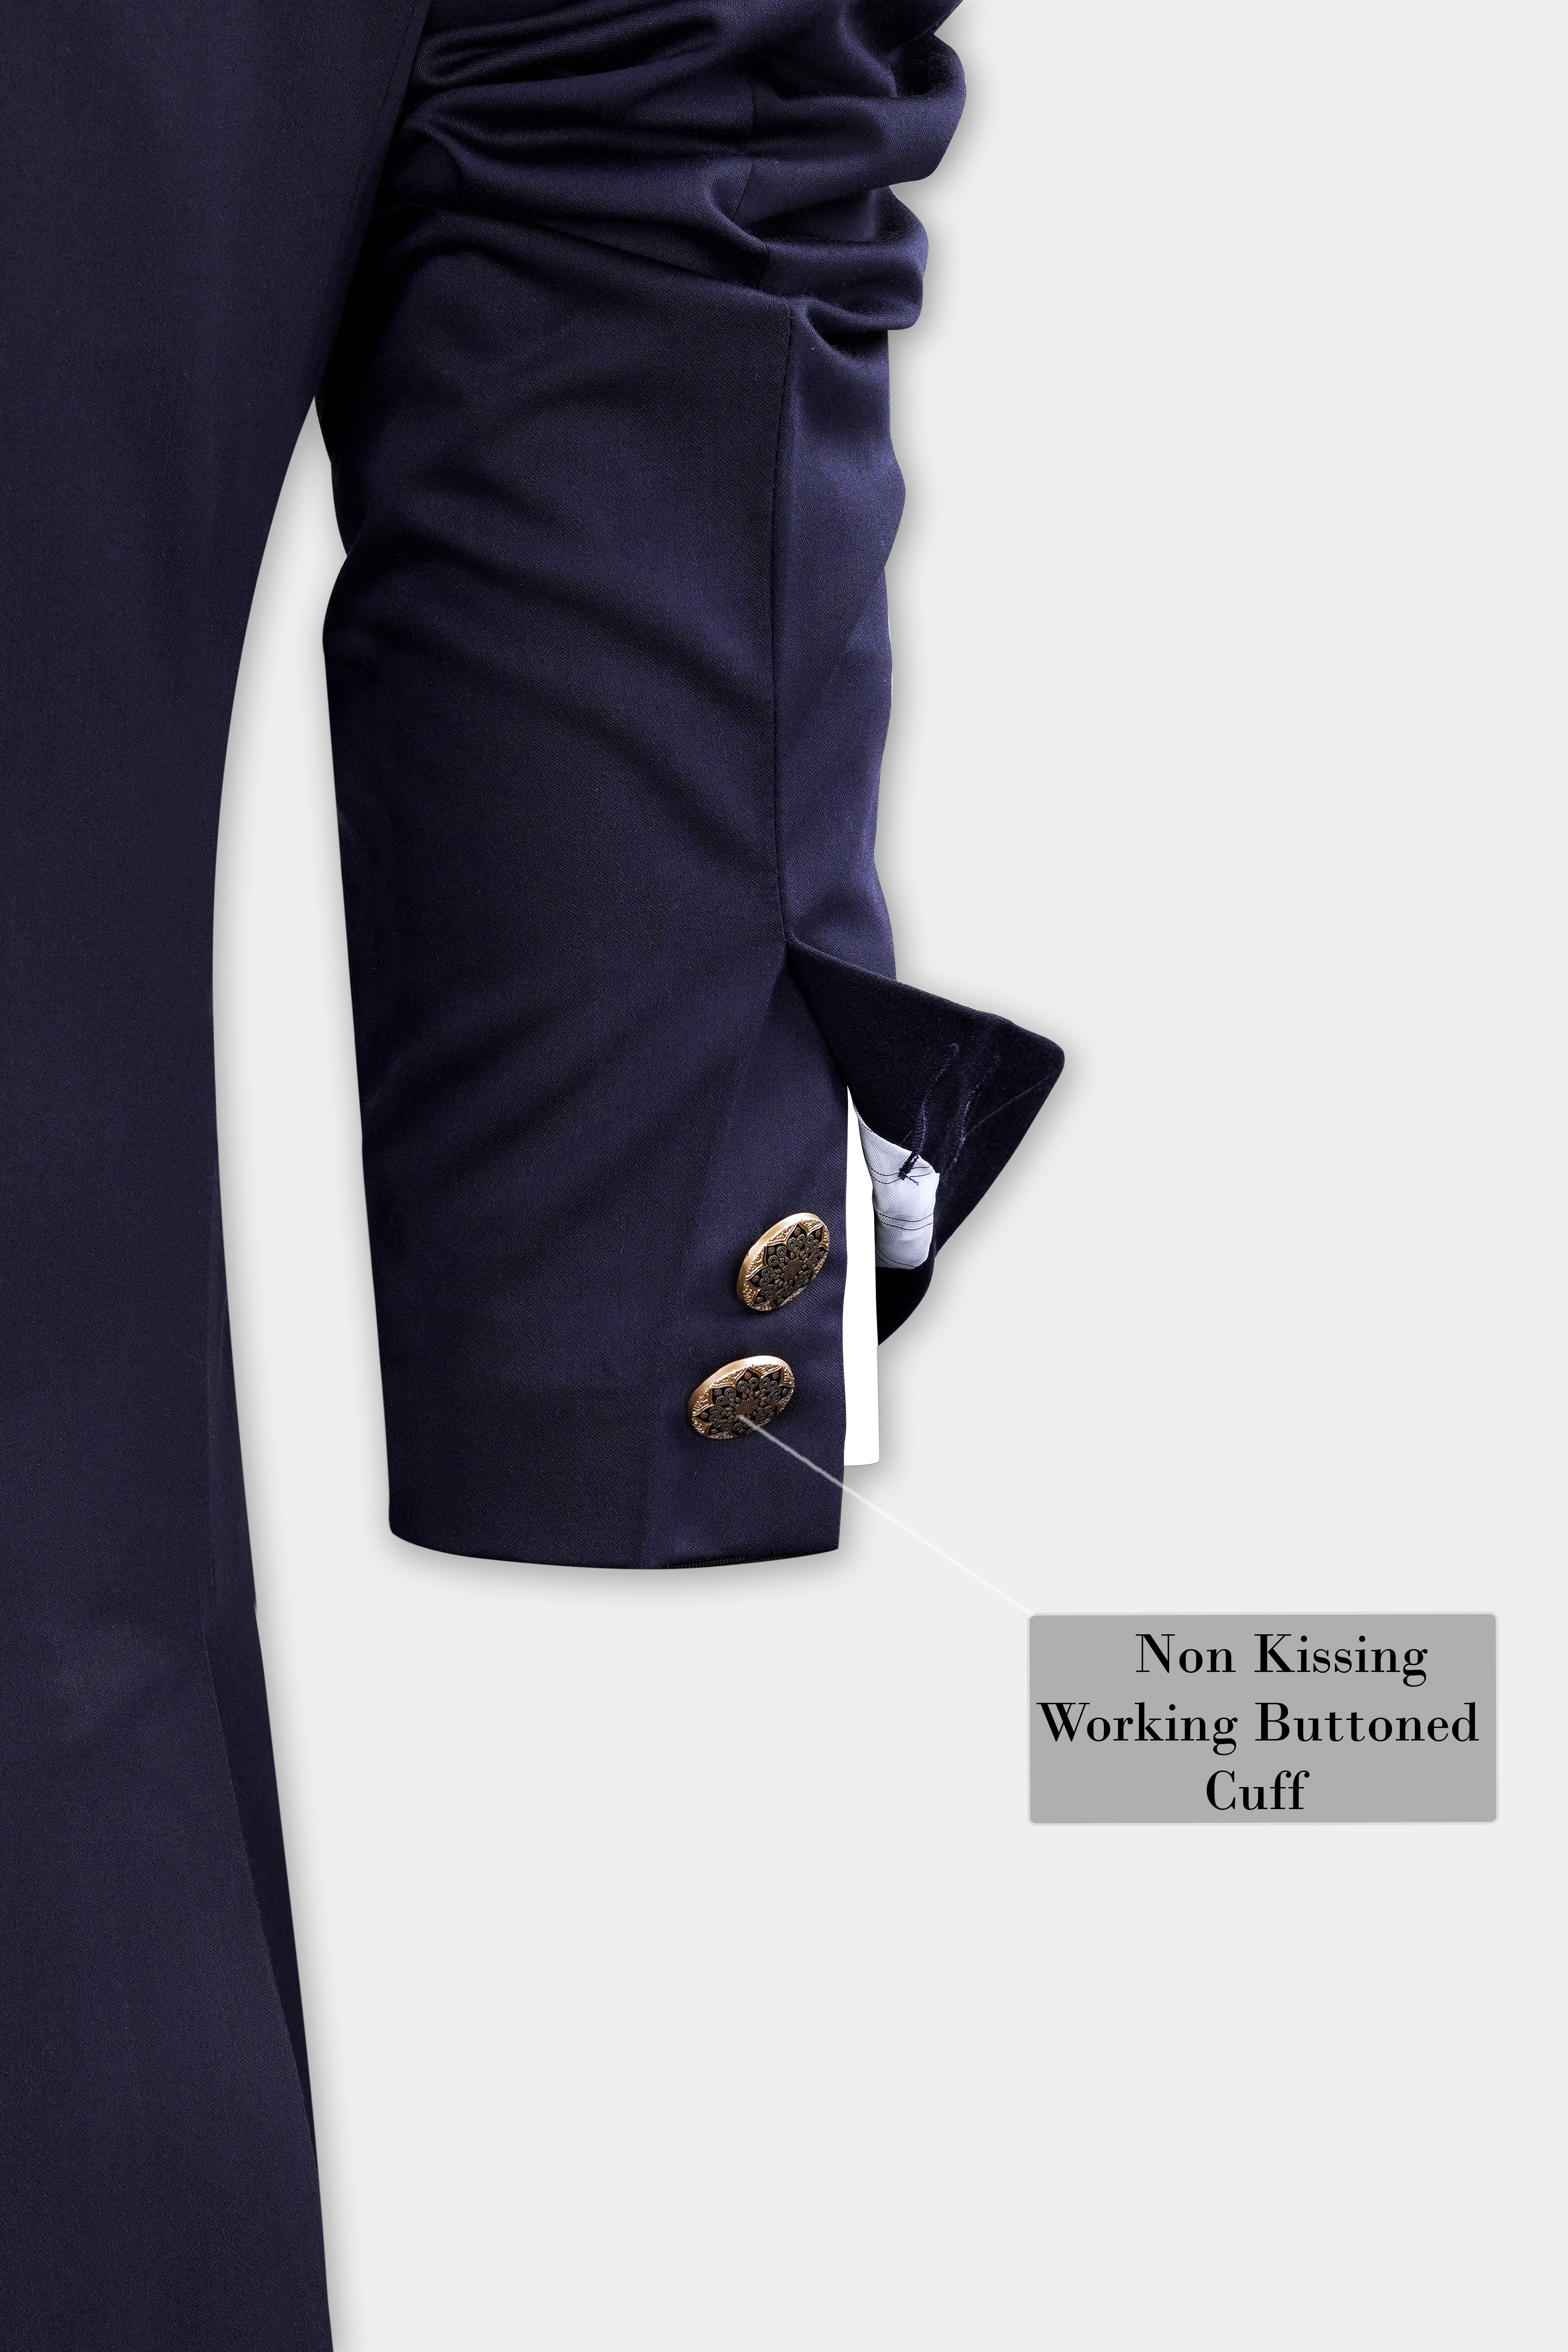 Space Cadet Blue Horizontal Stitched Wool Rich Bandhgala Designer Suit ST3016-BG-D168-36, ST3016-BG-D168-38, ST3016-BG-D168-40, ST3016-BG-D168-42, ST3016-BG-D168-44, ST3016-BG-D168-46, ST3016-BG-D168-48, ST3016-BG-D168-50, ST3016-BG-D168-52, ST3016-BG-D168-54, ST3016-BG-D168-56, ST3016-BG-D168-58, ST3016-BG-D168-60